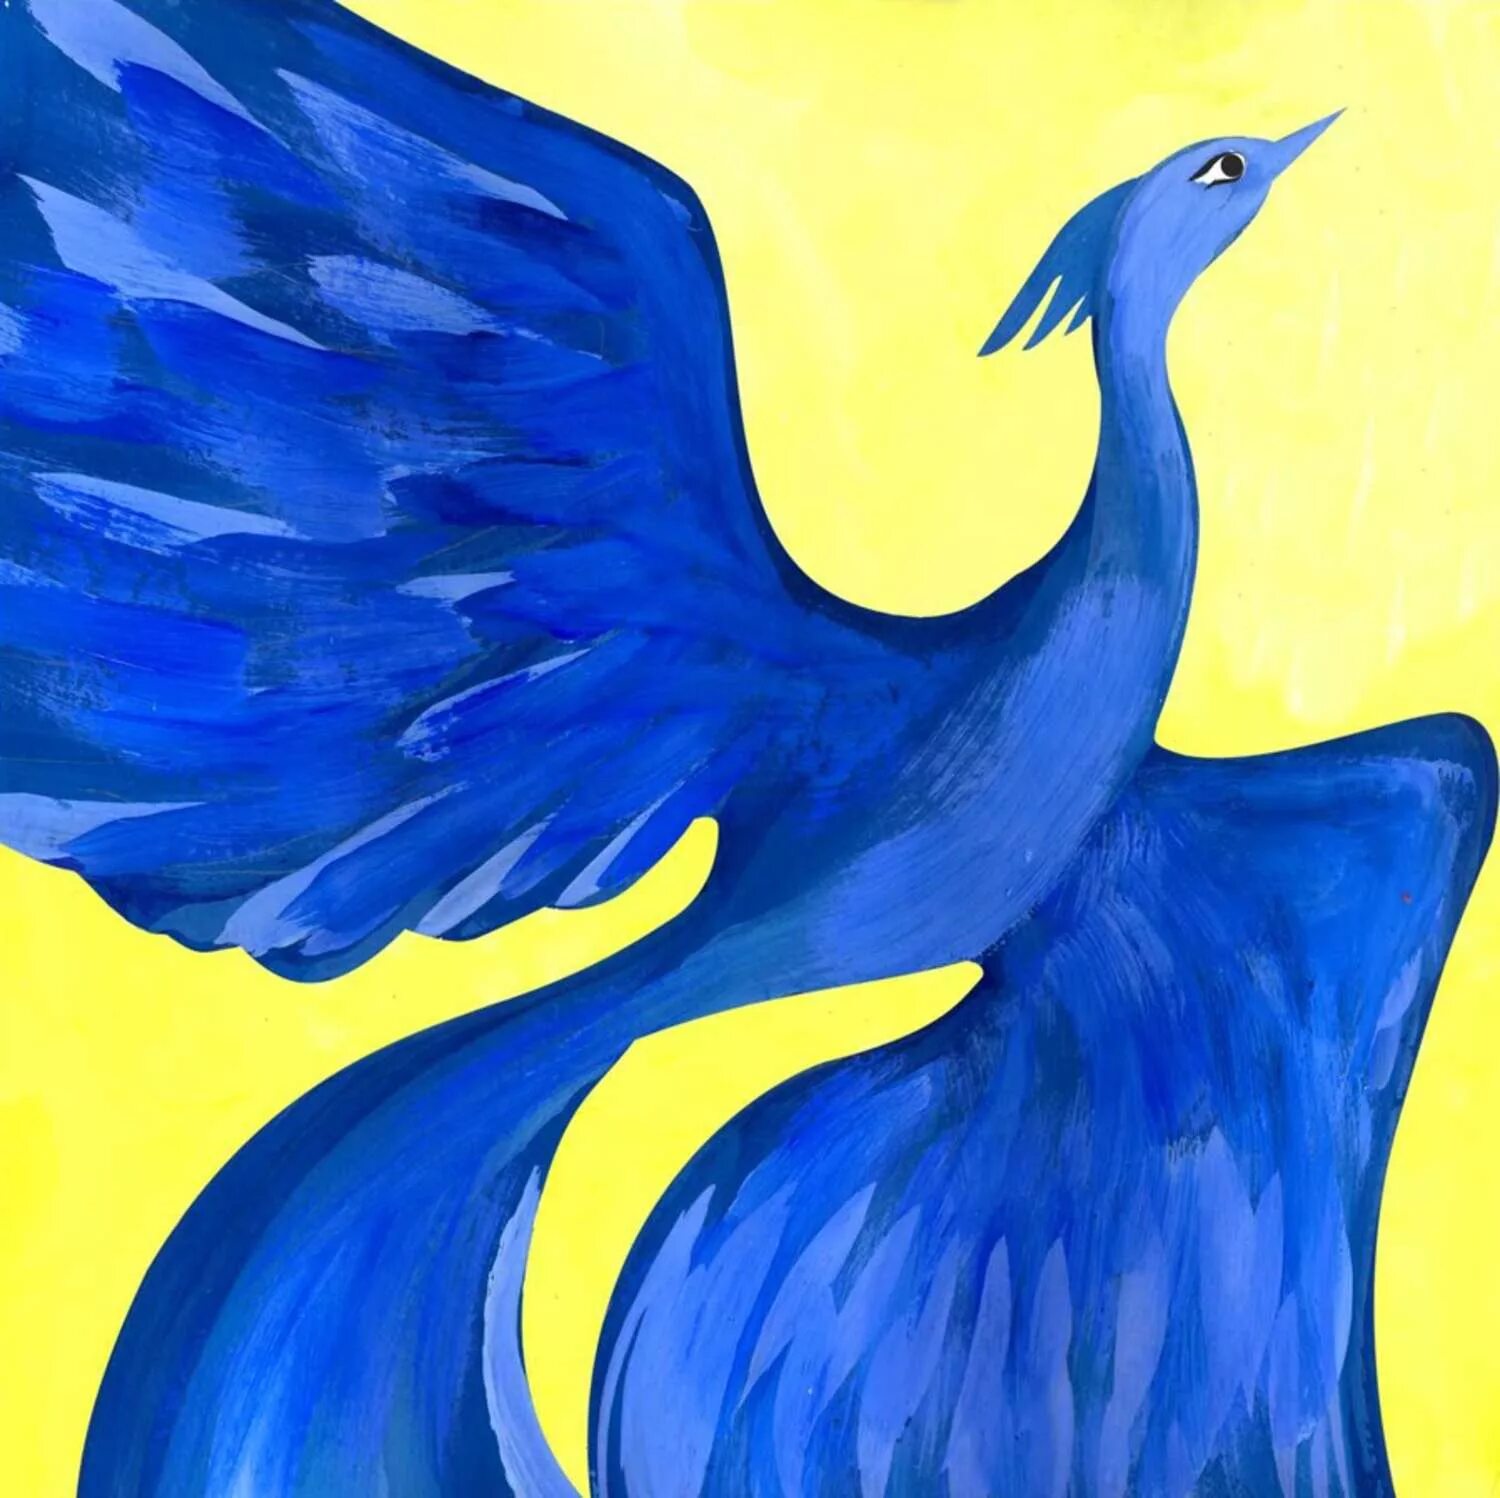 Дети синей птицы. Синяя птица Метерлинк. Синяя птица счастья Метерлинк. Метерлинк Морис, синяя птица, 1989. Птица синяя птица из сказки Метерлинка синяя птица.